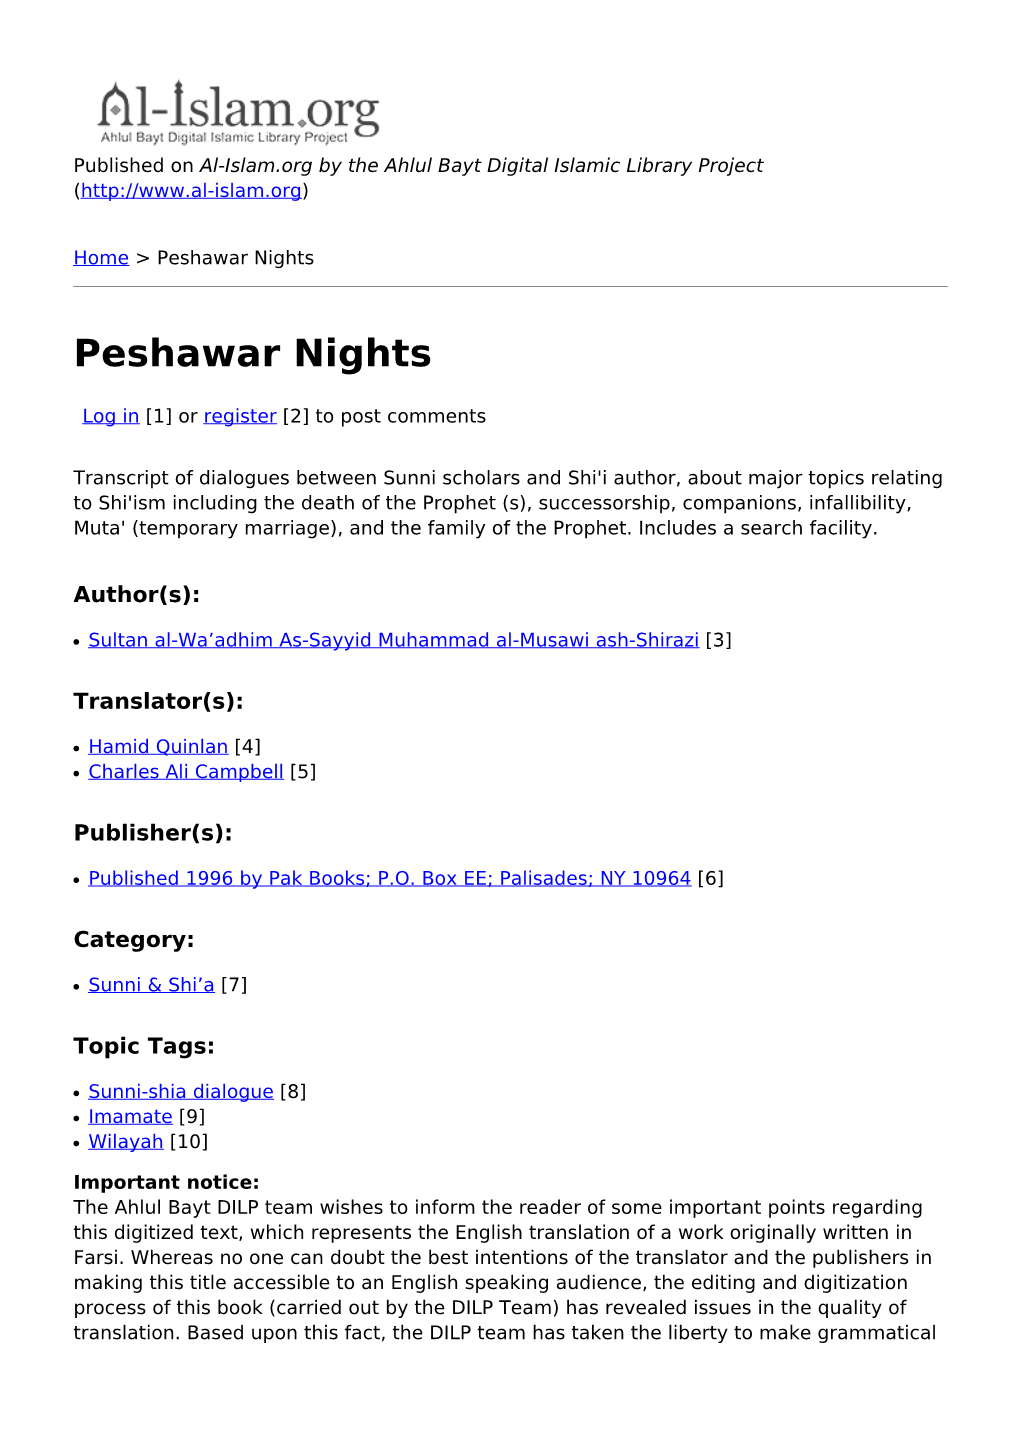 Peshawar Nights